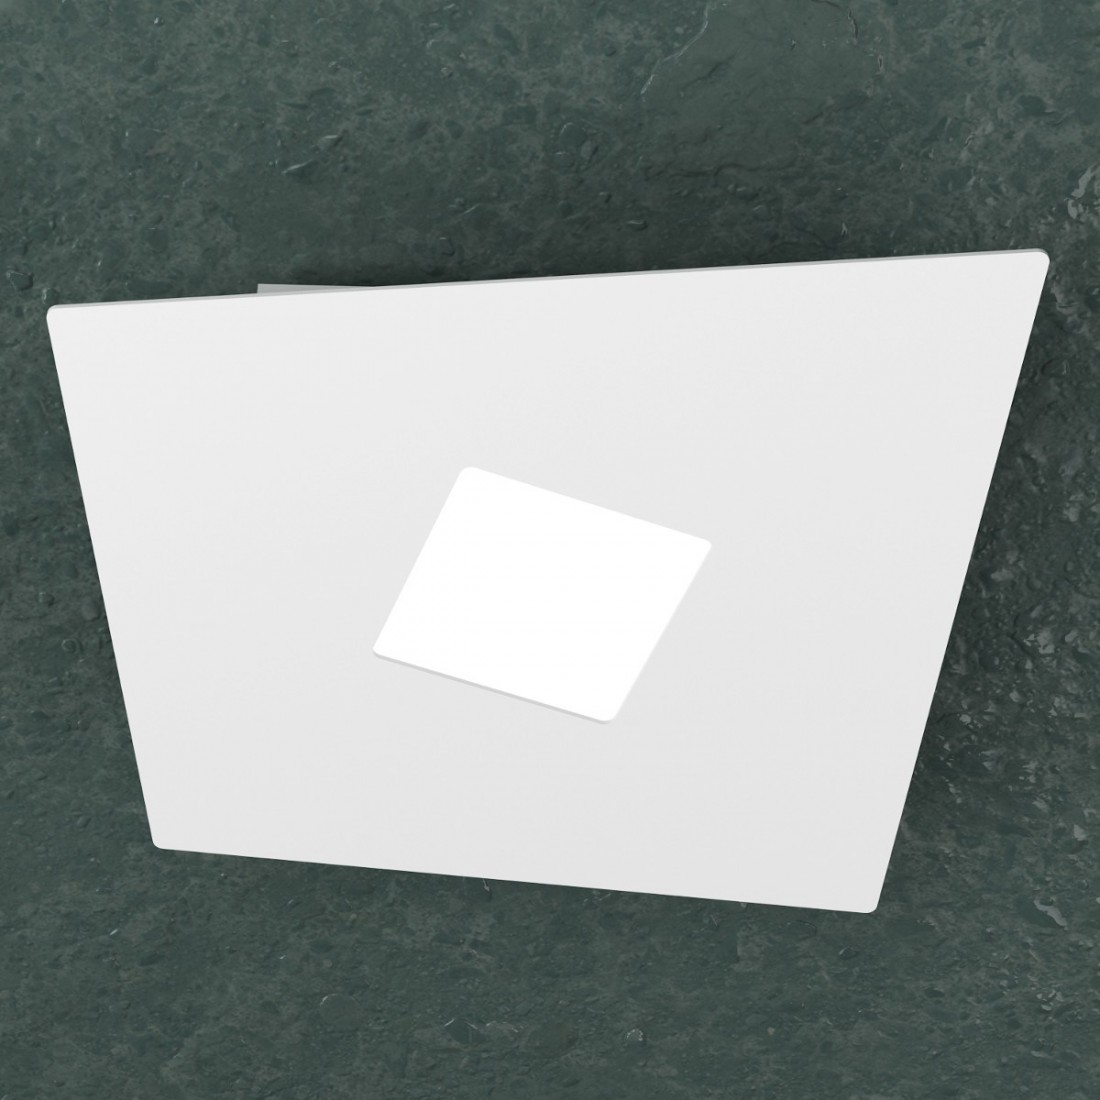 AppliqueTP-NOTE 1140 1 GX53 LED metallo bianco grigio sabbia lampada soffitto parete moderna interno